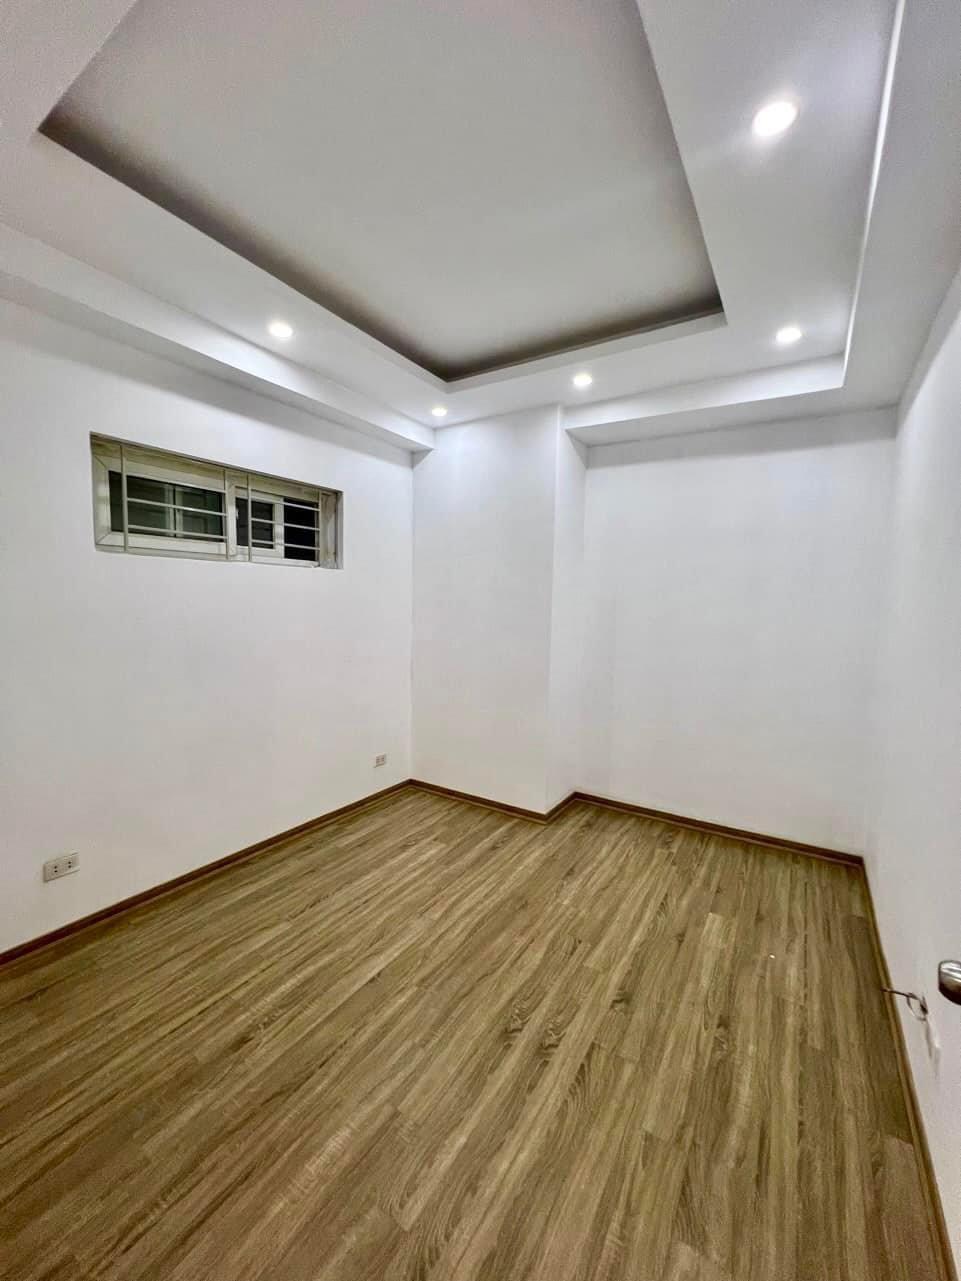 Cần bán căn hộ 72m2 full nội thất chung cư Thanh Hà Cienco 5 chỉ 2,x tỉ - Ảnh 3